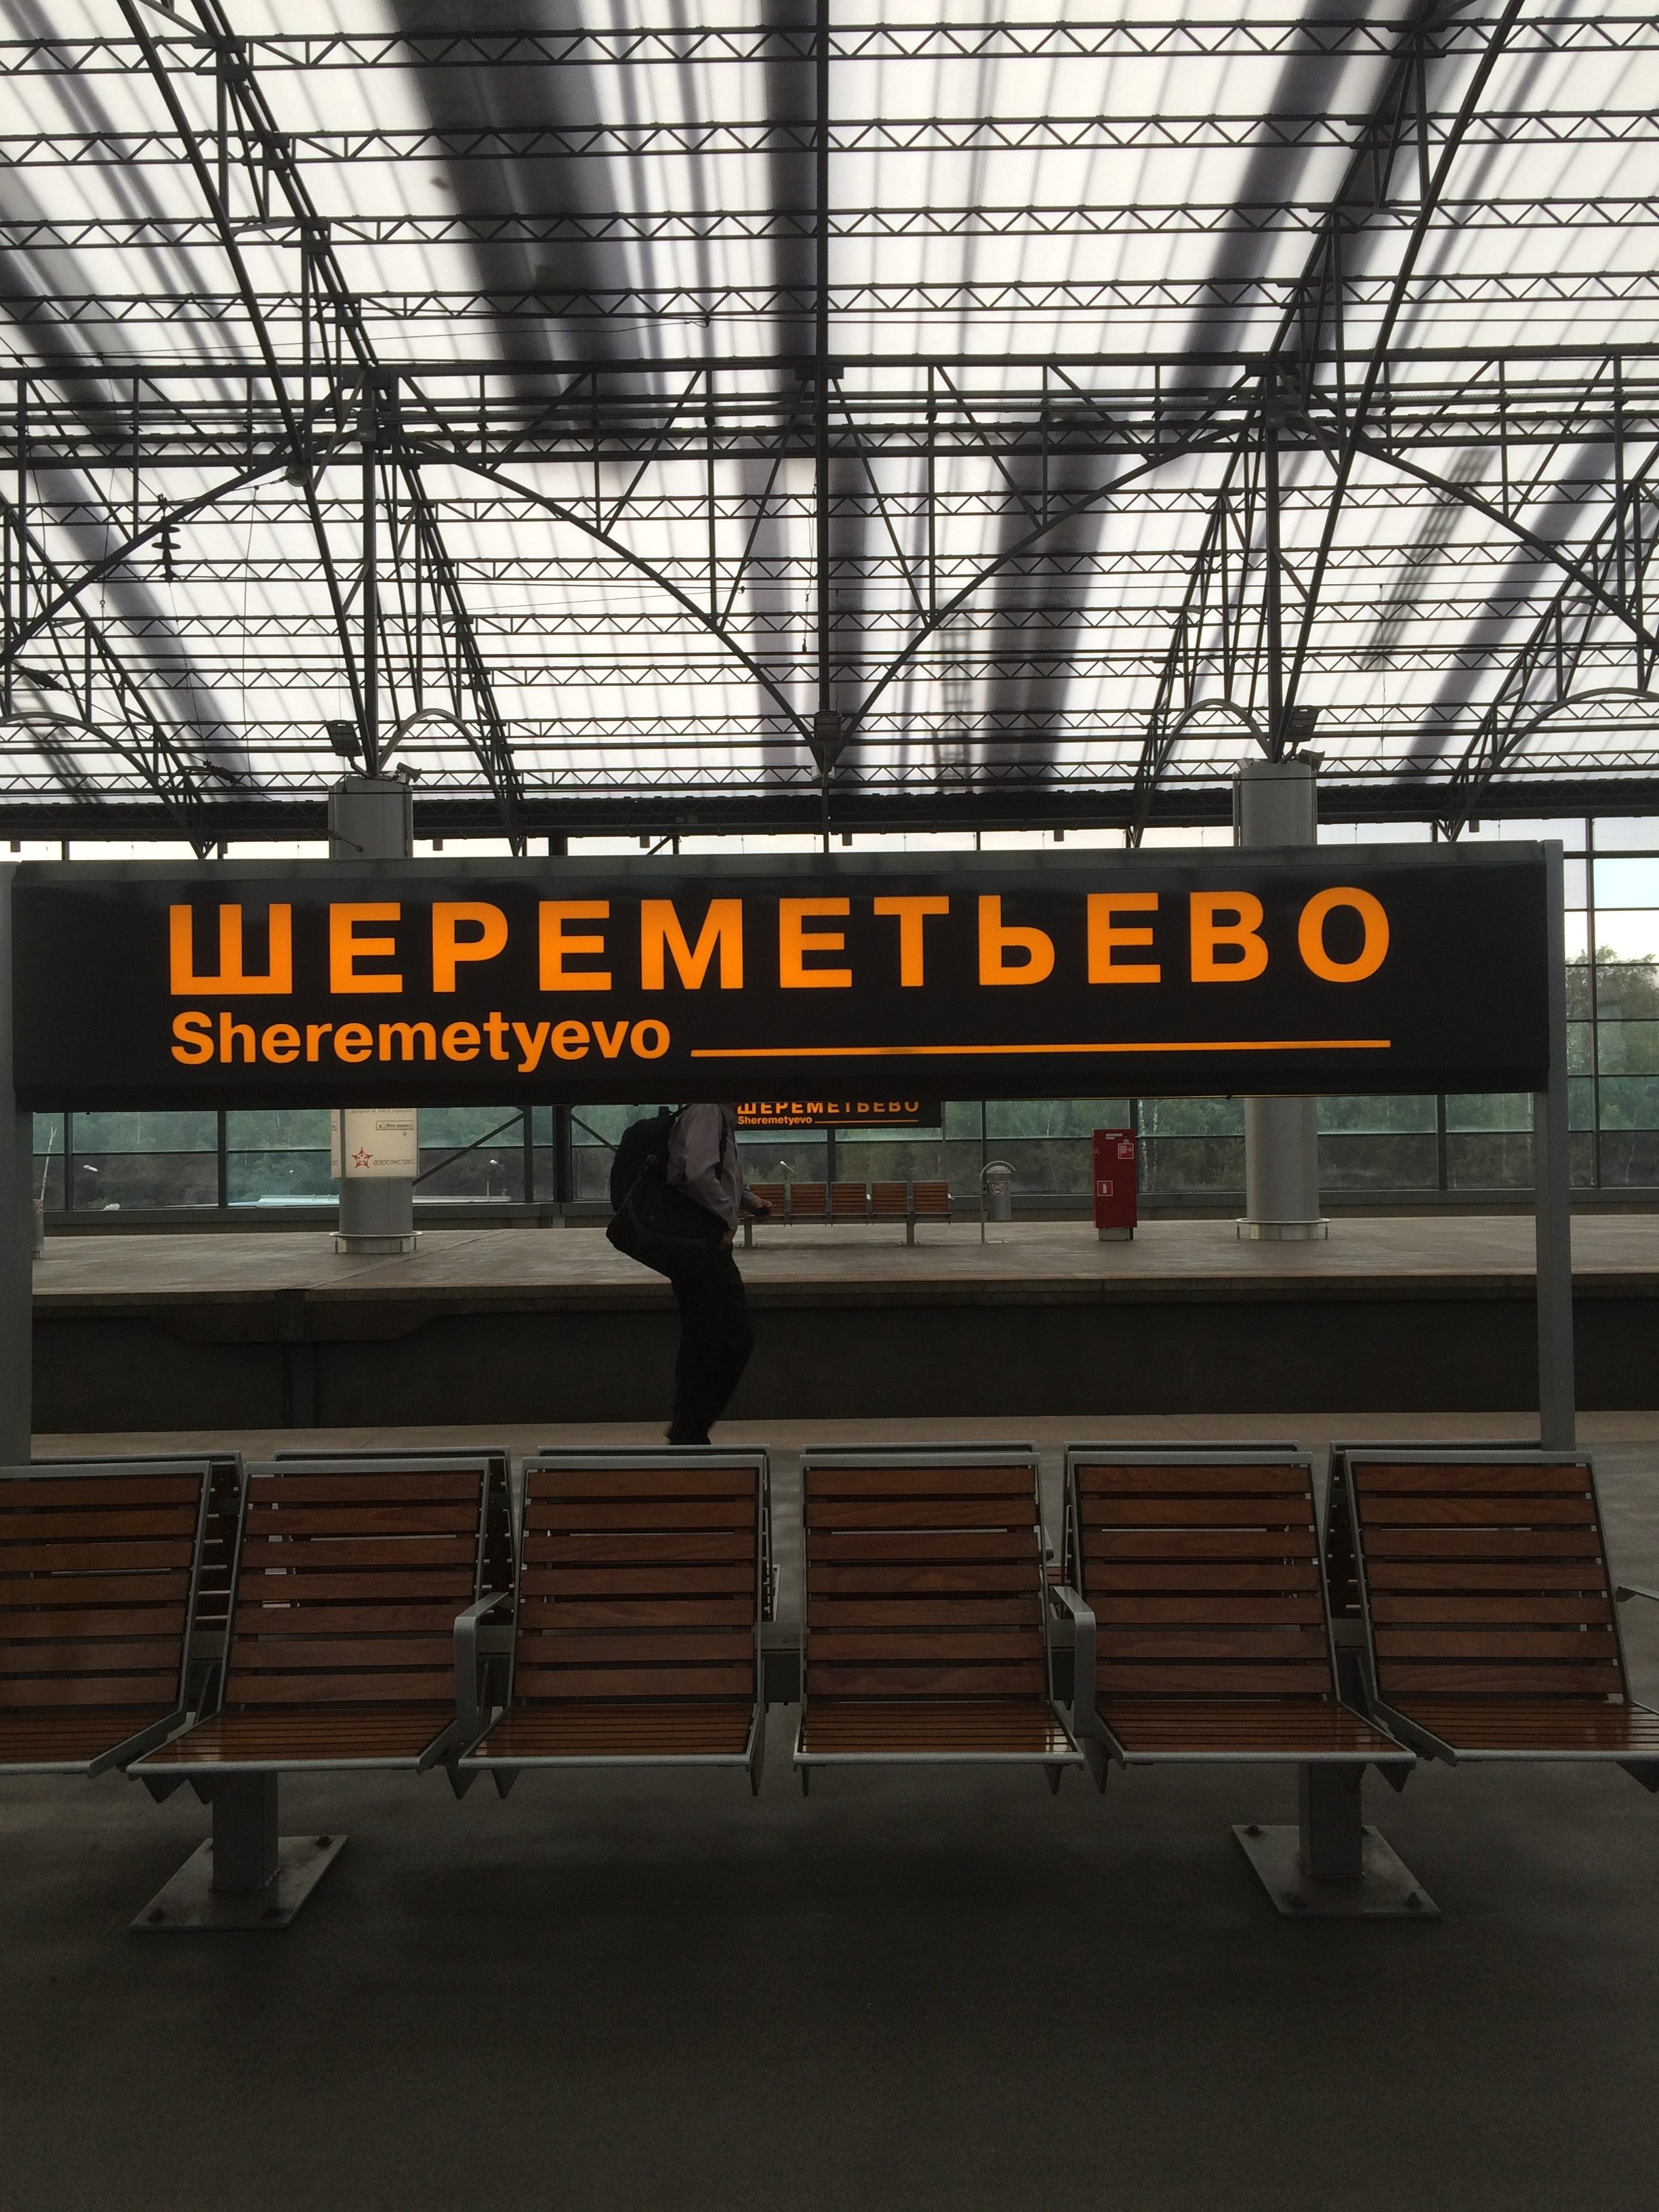 シェレメチェボ空港駅